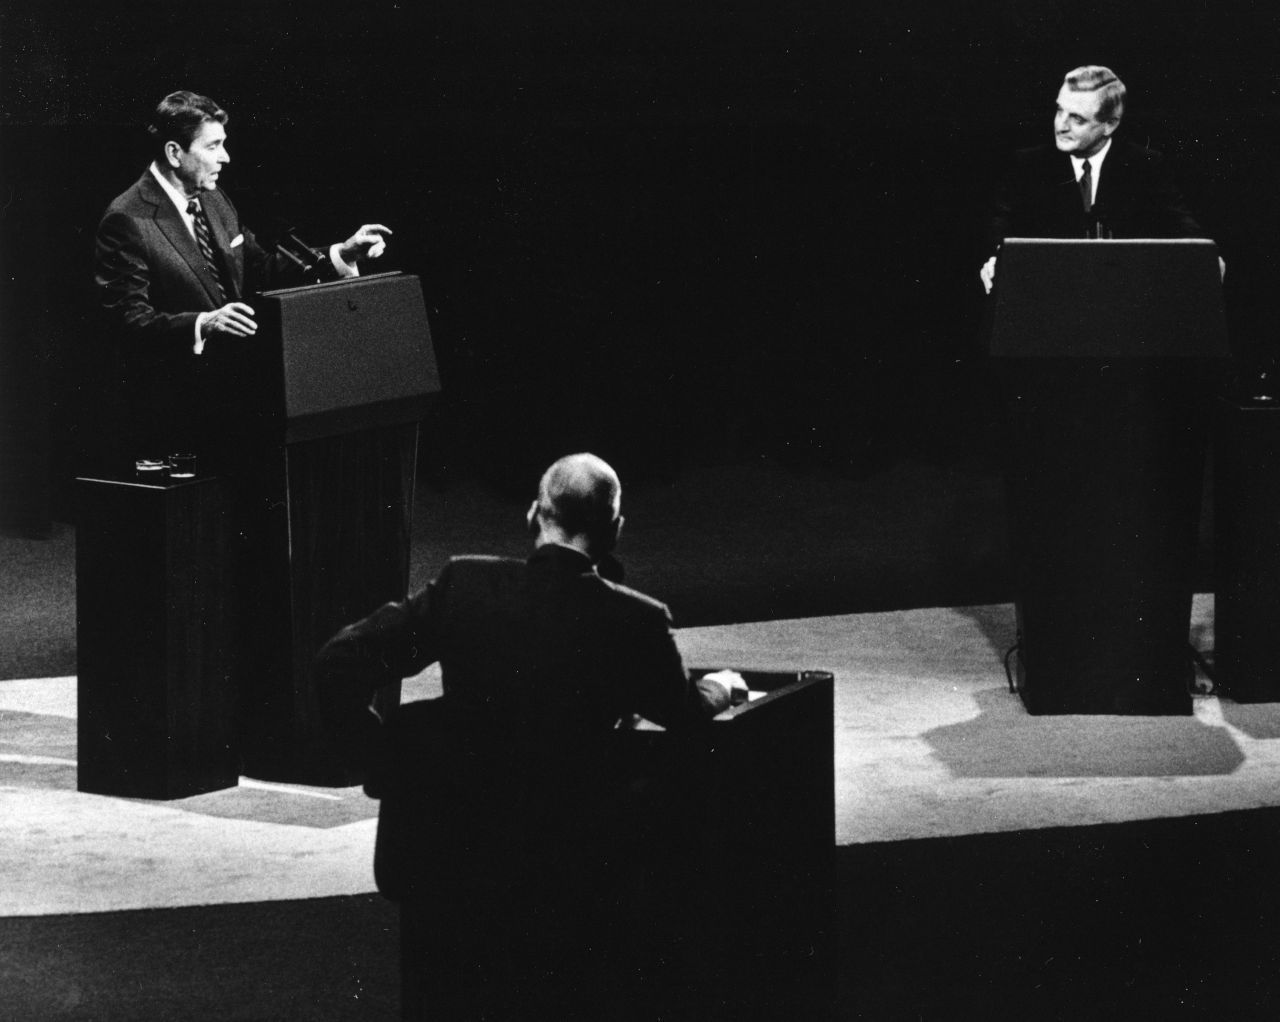 Ronald Reagan (links) war beim TV-Duell 1984 bereits 73 Jahre alt. Auf kritische Fragen zu seinem Alter reagierte er mit dem Hinweis, er werde die Unerfahrenheit seines Gegners Walter Mondale nicht ausnutzen.